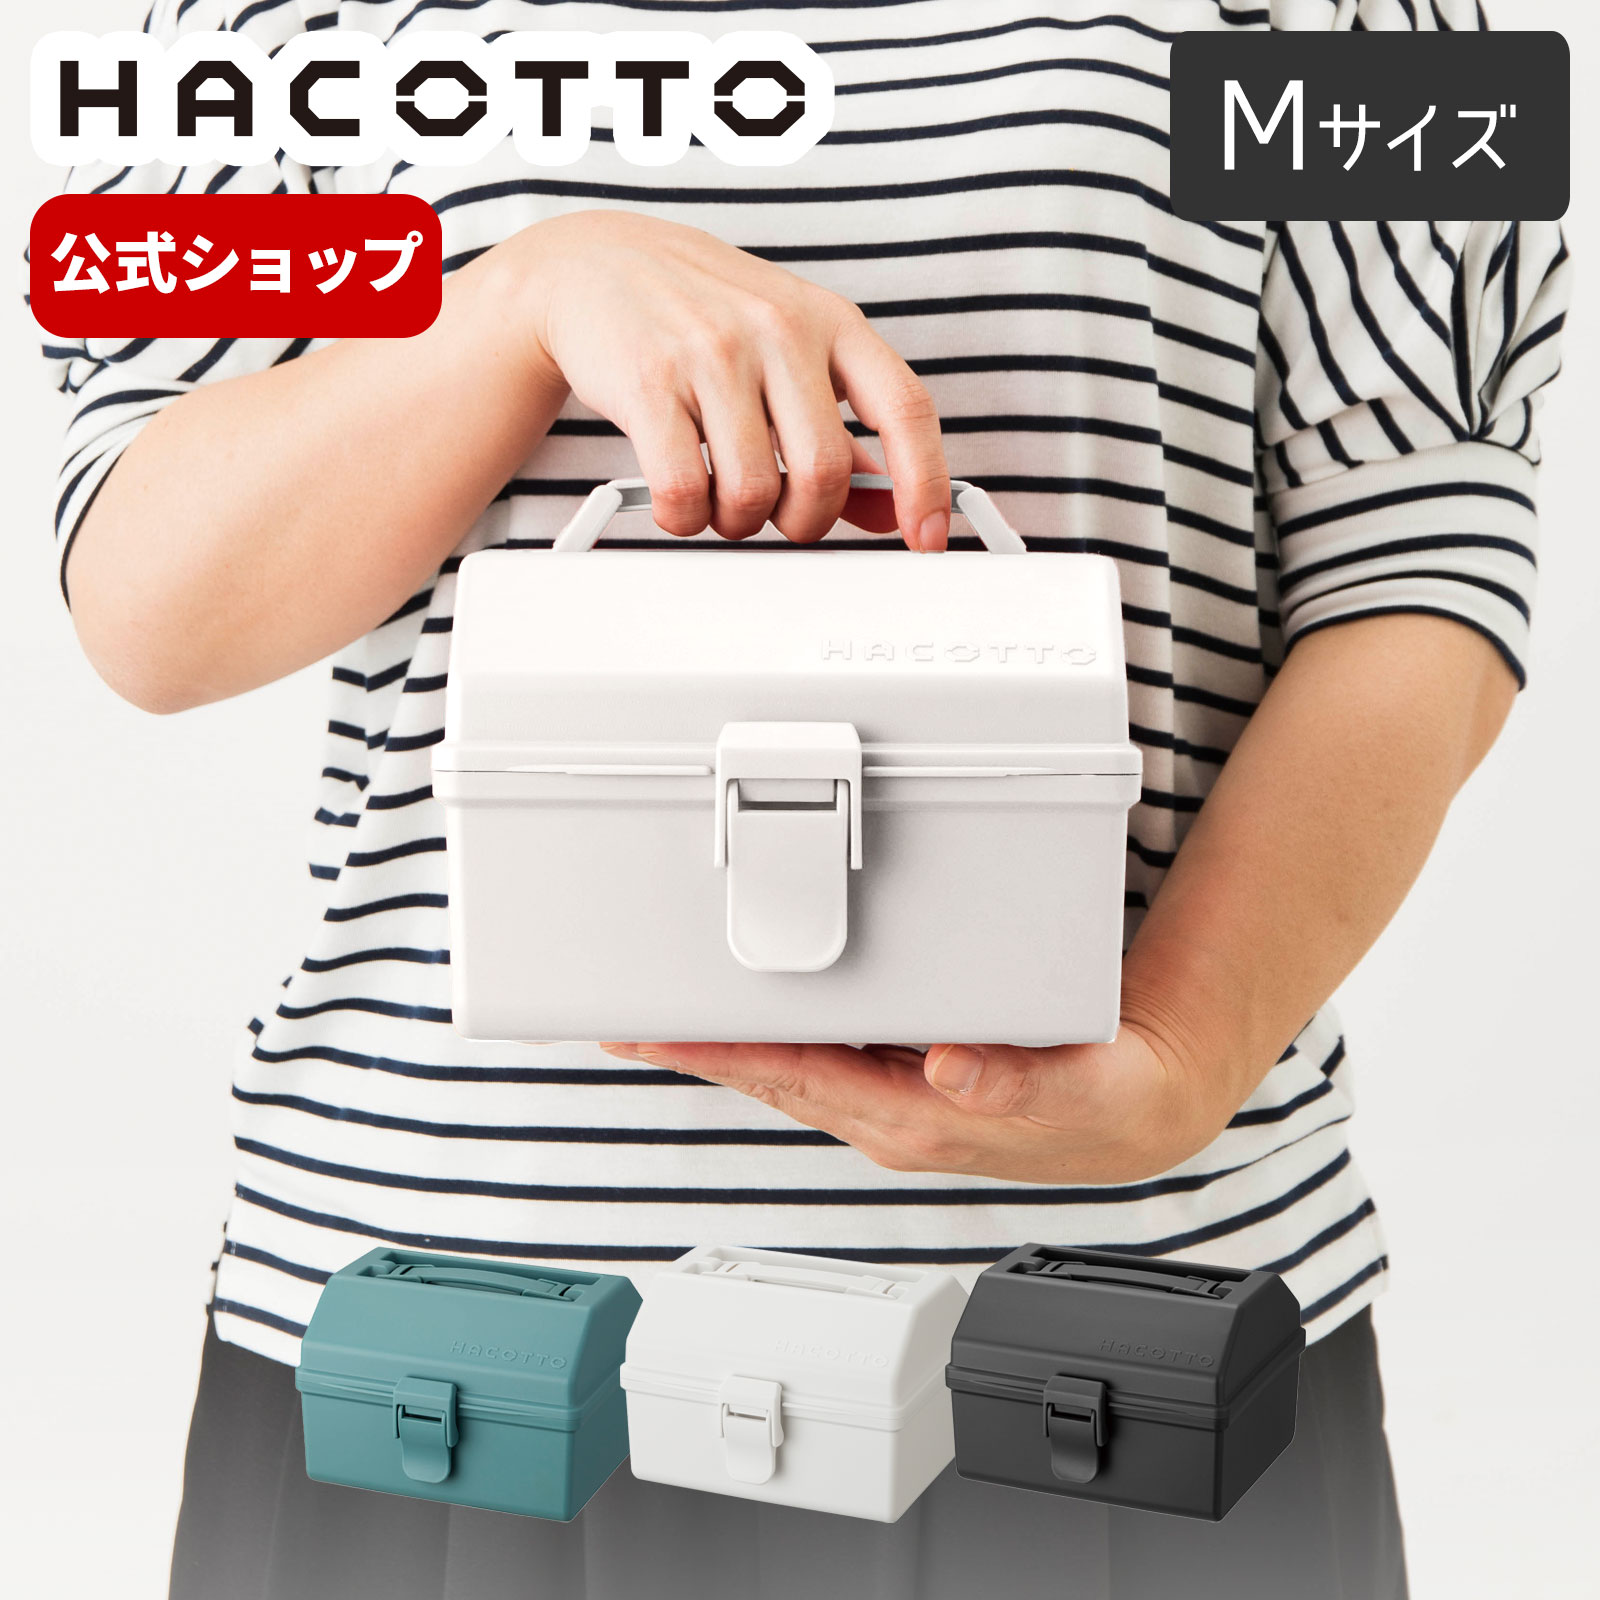 楽天市場】◇クーポン対象外◇ハコット hacotto M 道具箱 ツール